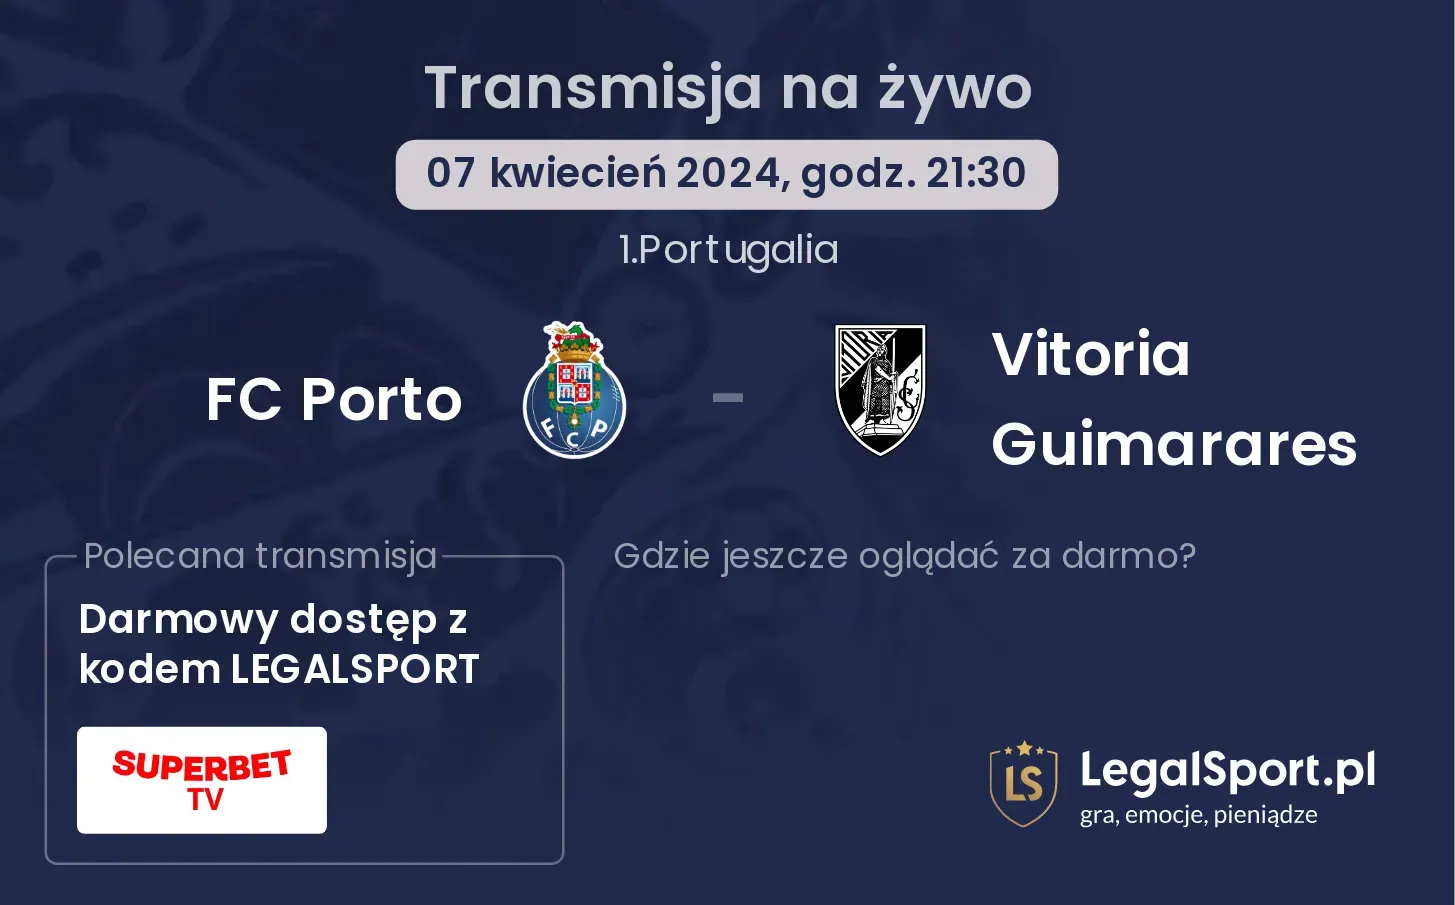 FC Porto - Vitoria Guimarares transmisja na żywo